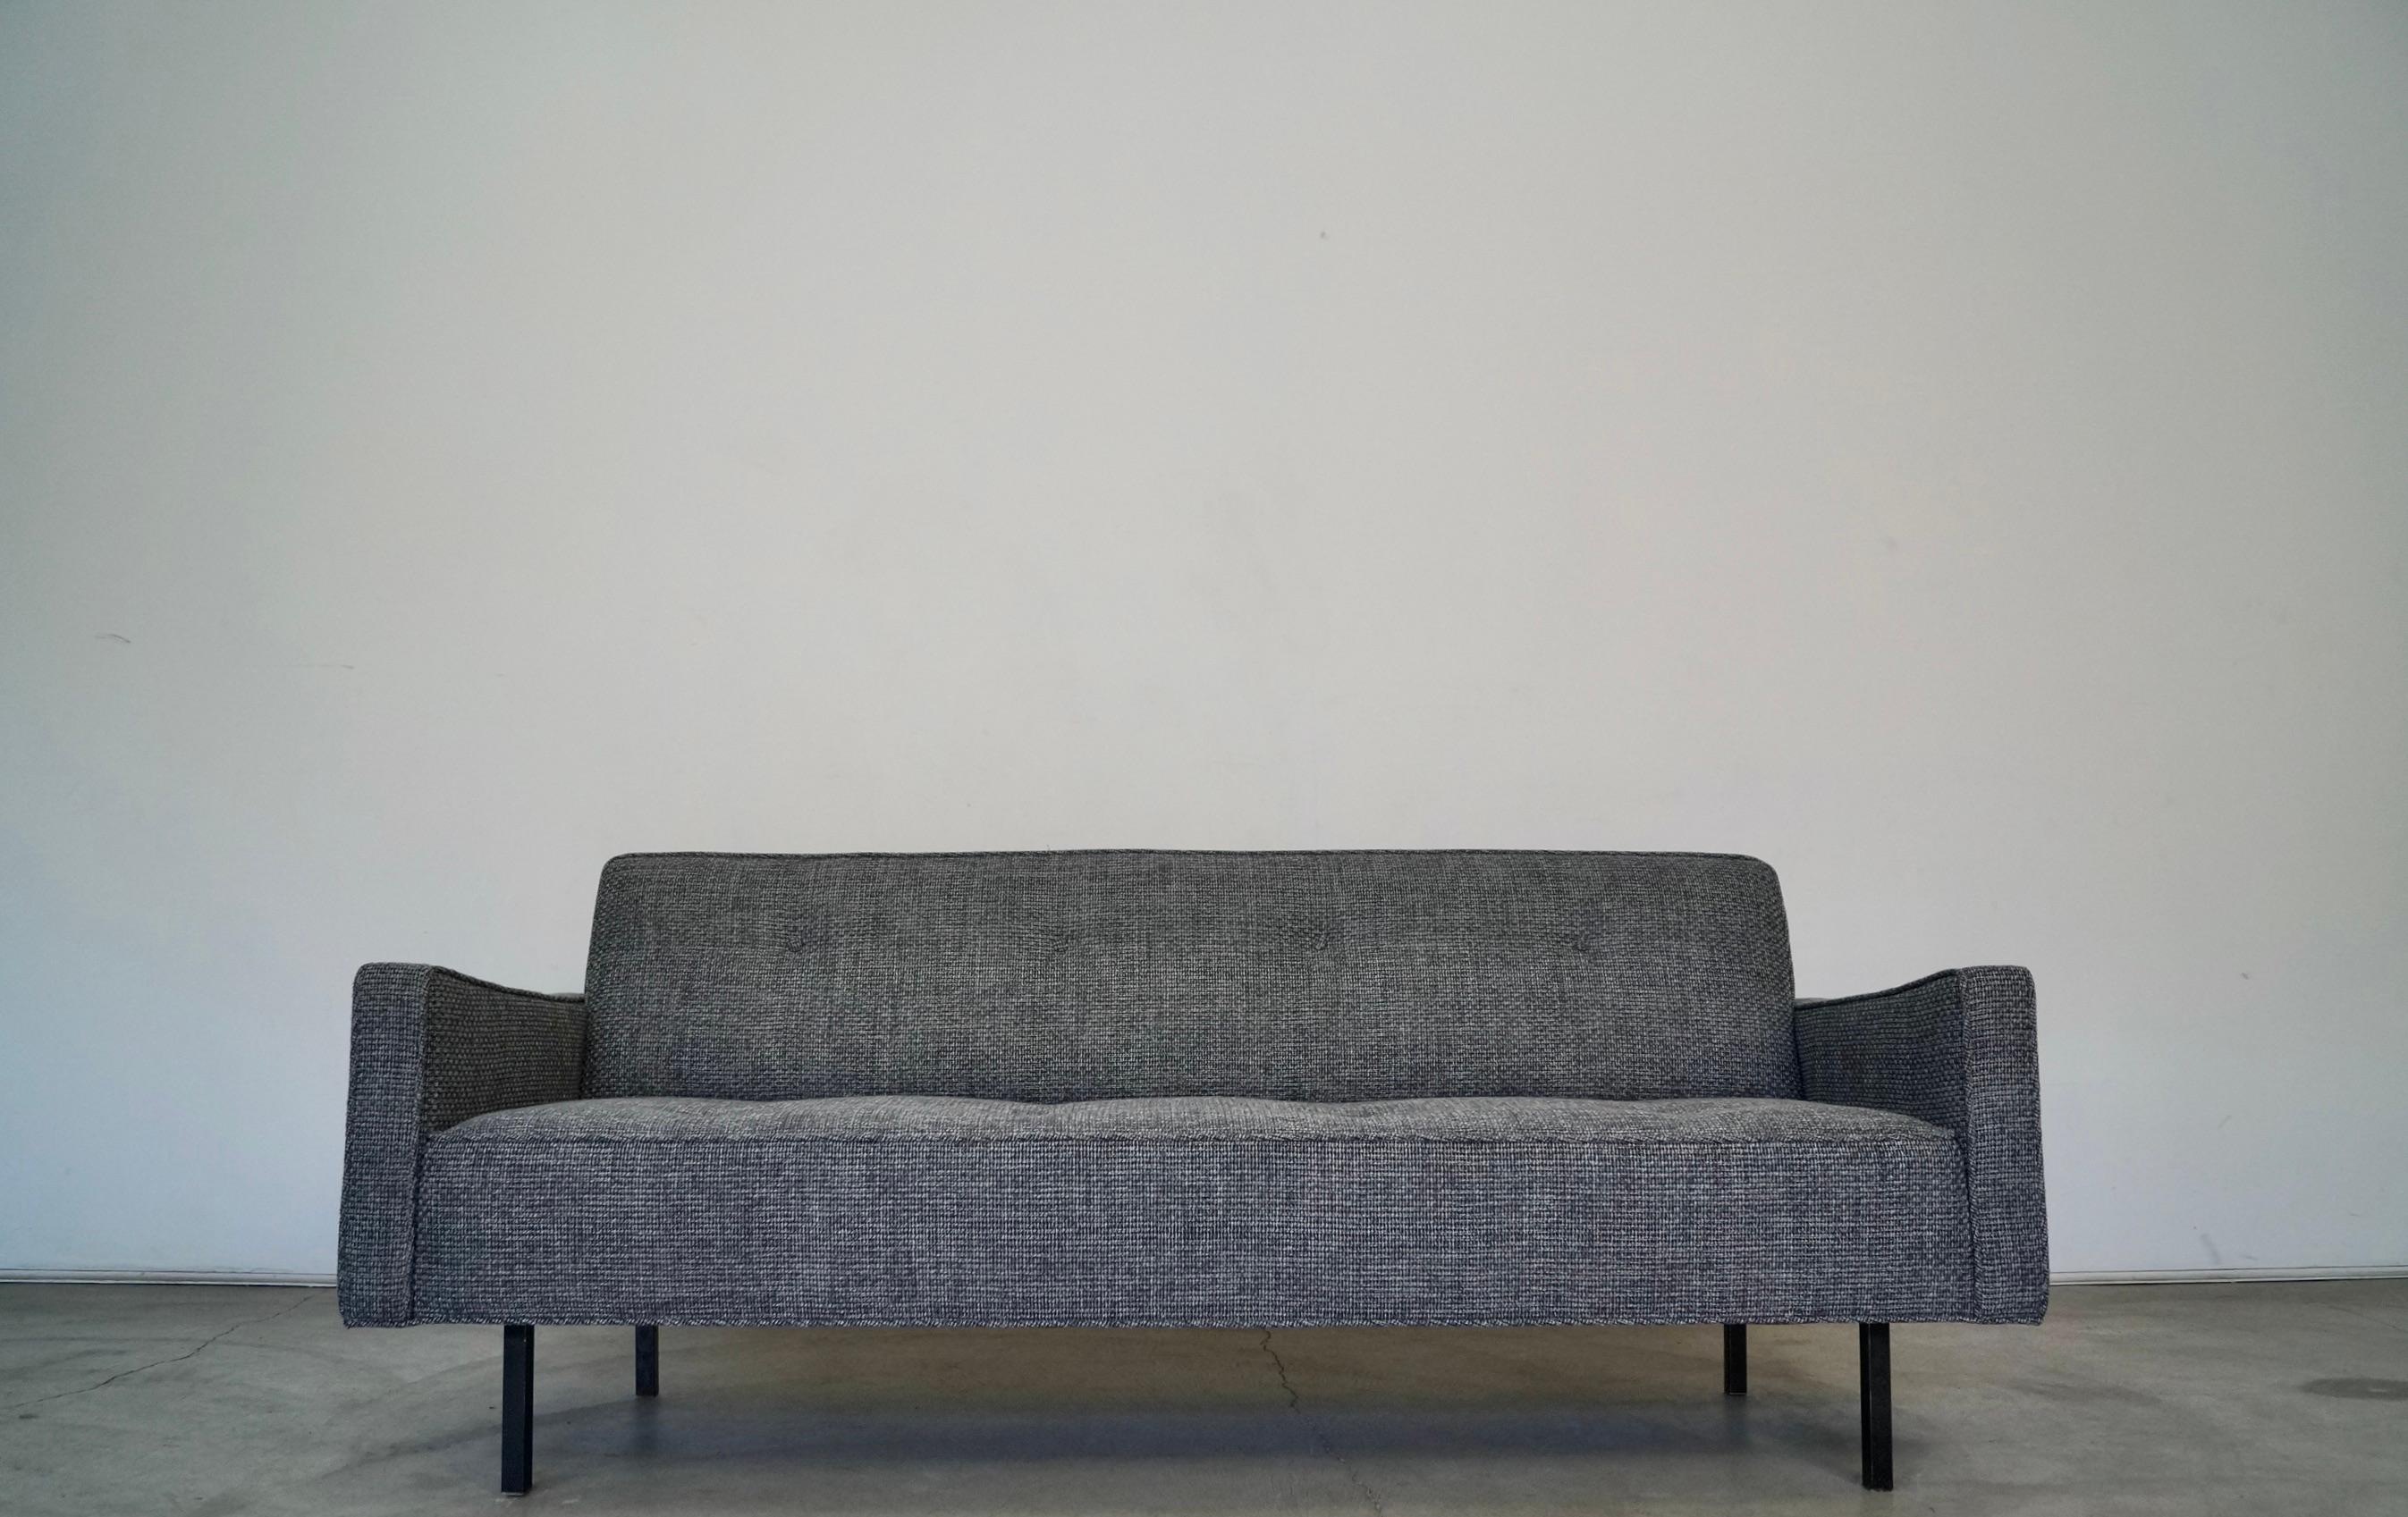 Vintage 1960s Mid-Century Modern Couch zu verkaufen. Er wurde professionell mit neuem Tweed und Schaumstoff gepolstert und befindet sich in restauriertem Zustand. Es hat einen schönen Rahmen mit unglaublichen Linien in der Art von George Nelson für